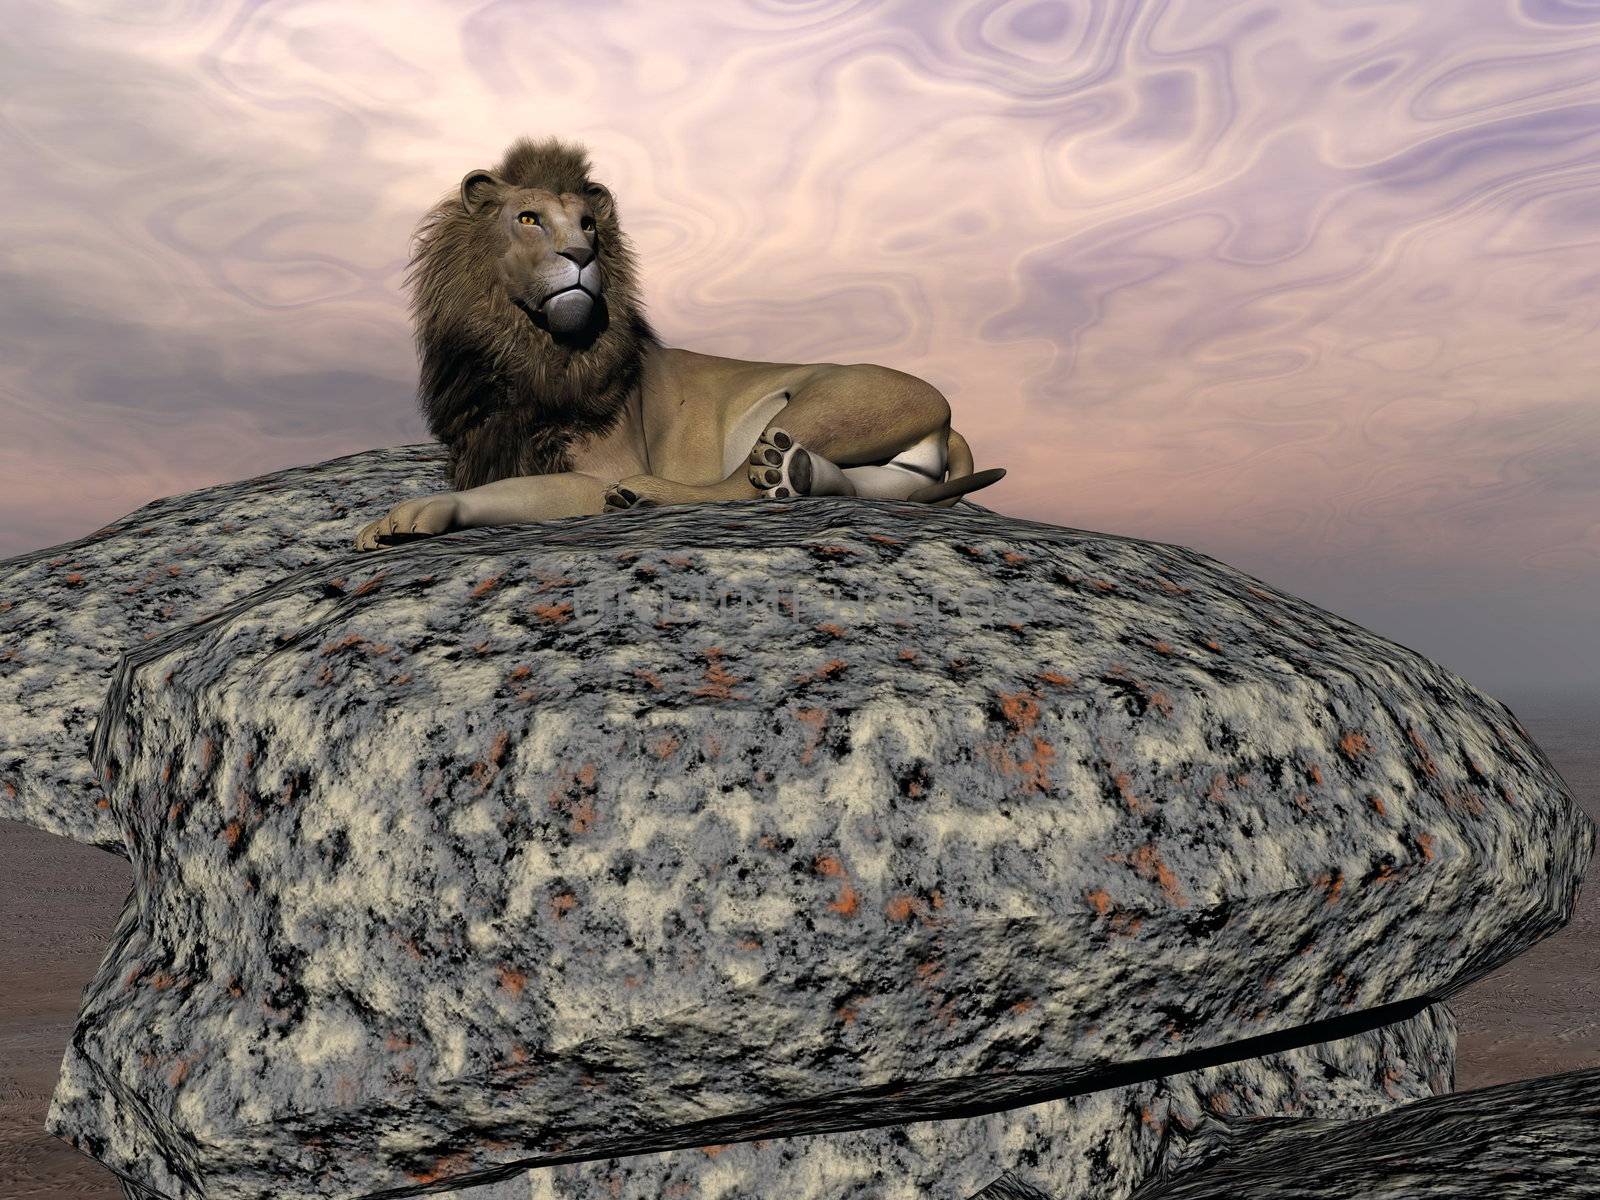 Lion resting - 3D render by Elenaphotos21